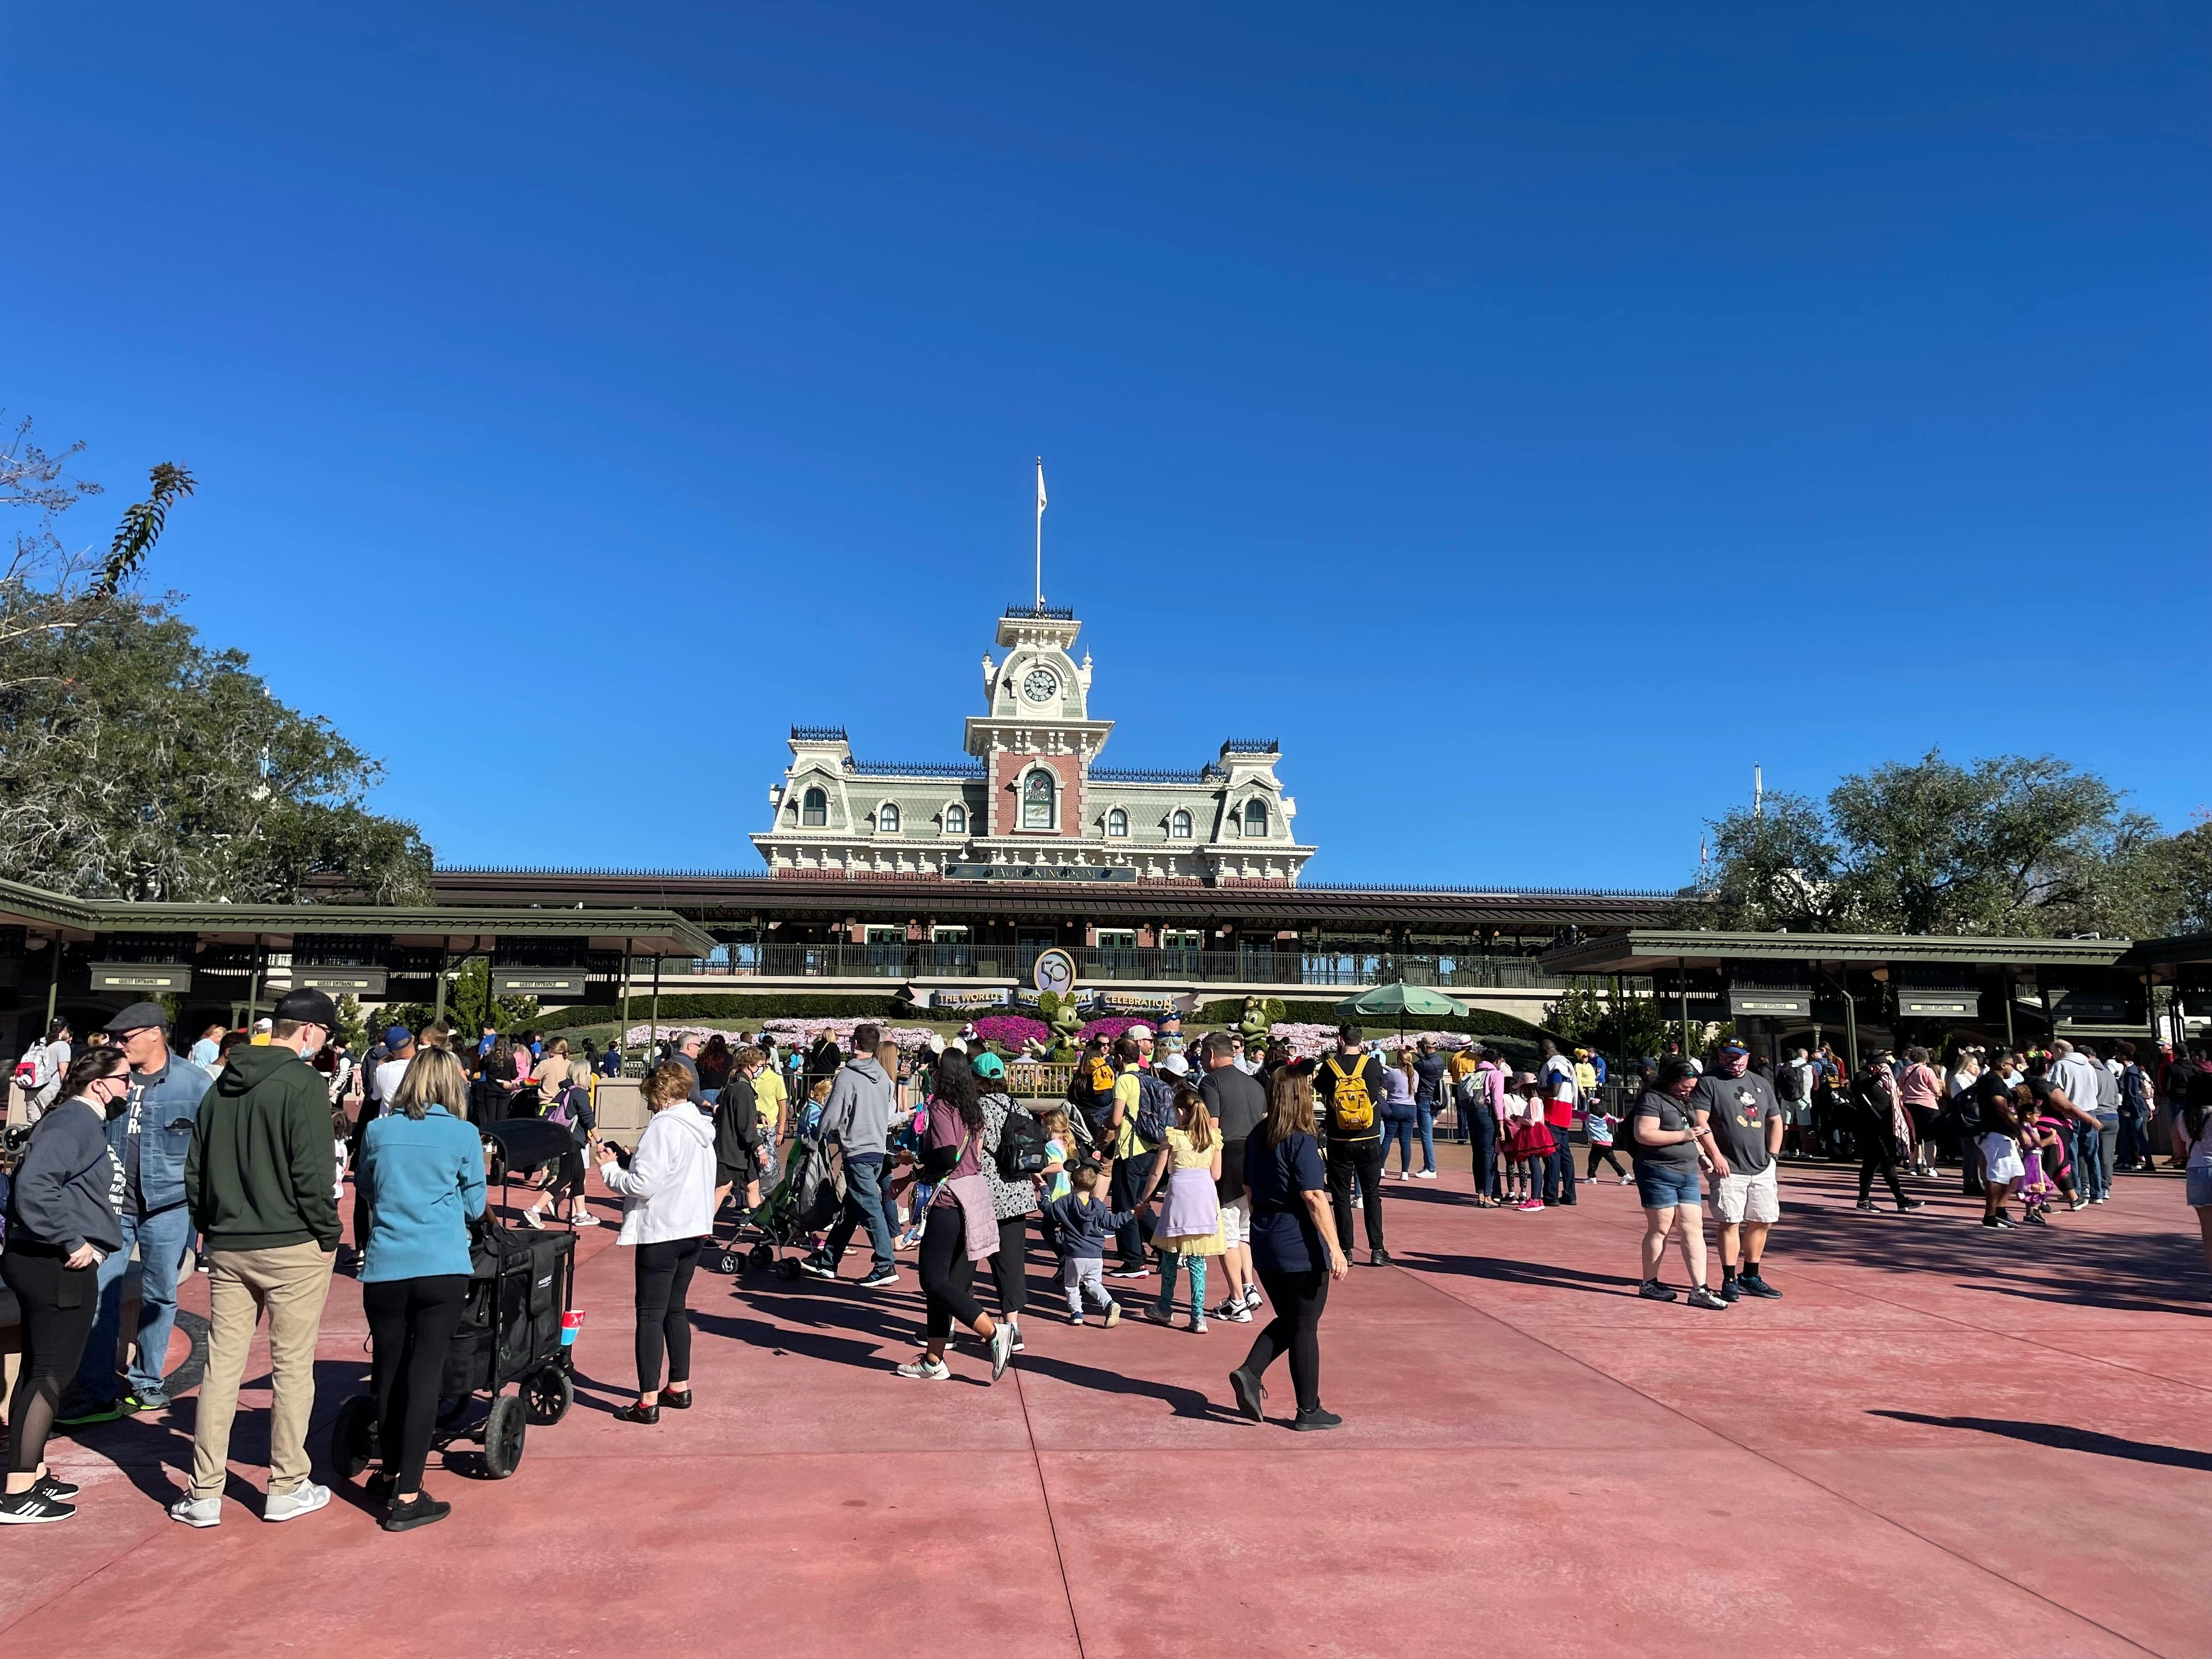 Crowded entryway at Walt Disney World's Magic Kingdom